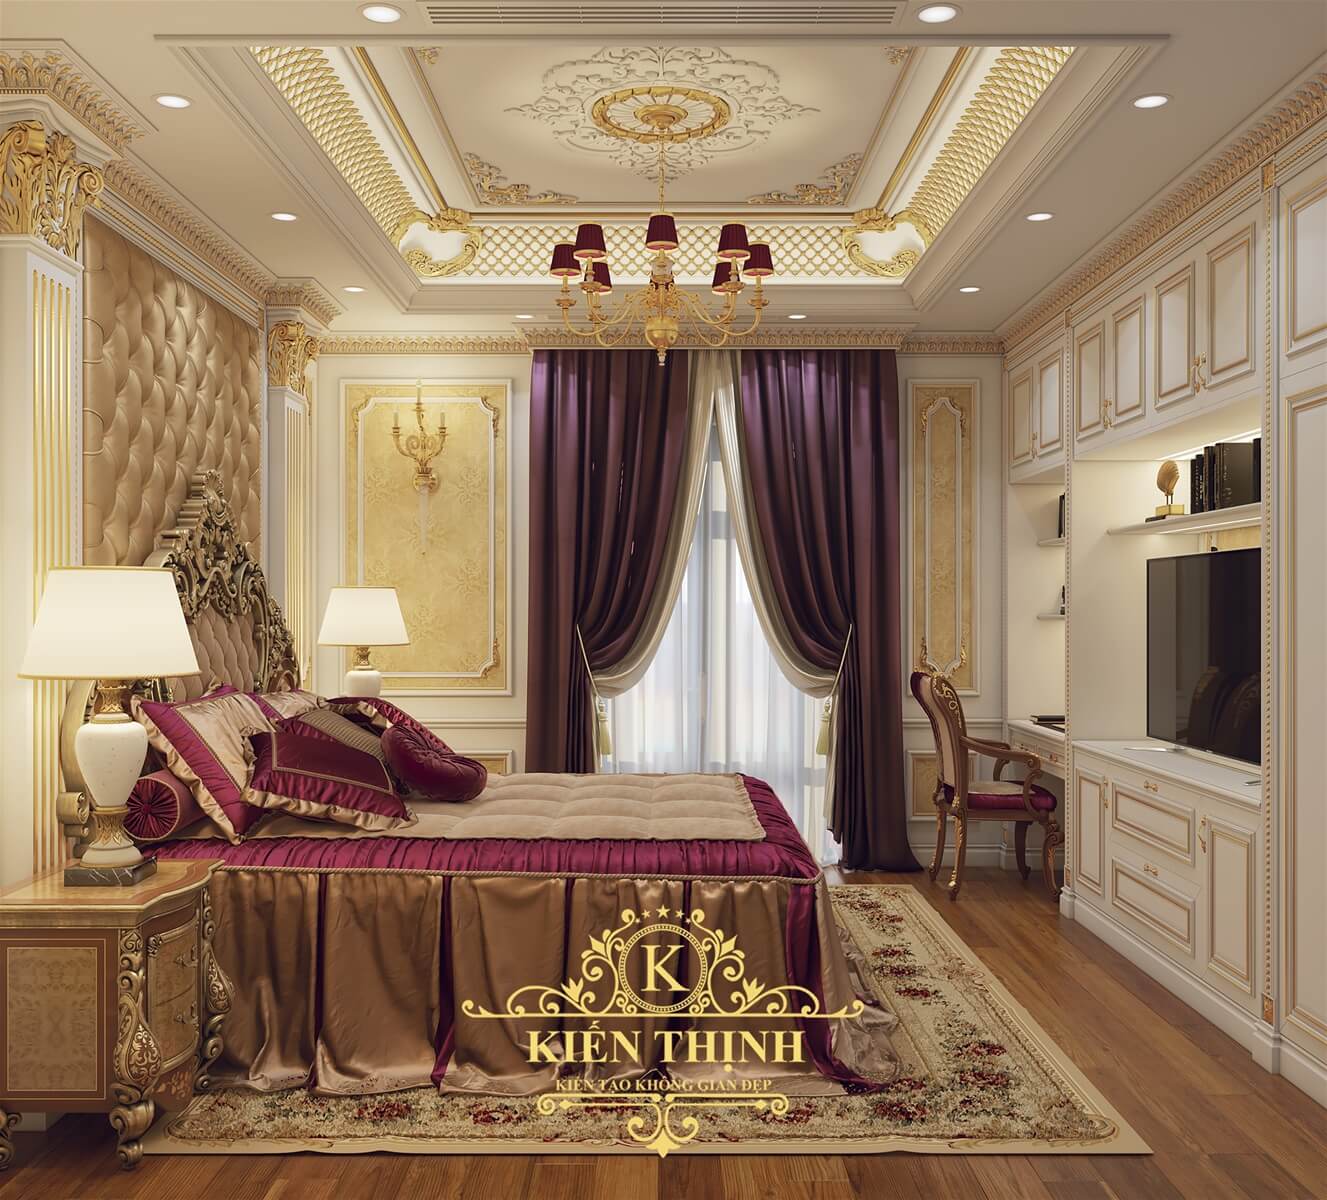  Mẫu thiết kế phòng ngủ biệt thự tân cổ điển Châu Âu đẹp lộng lẫy tại Nghệ An